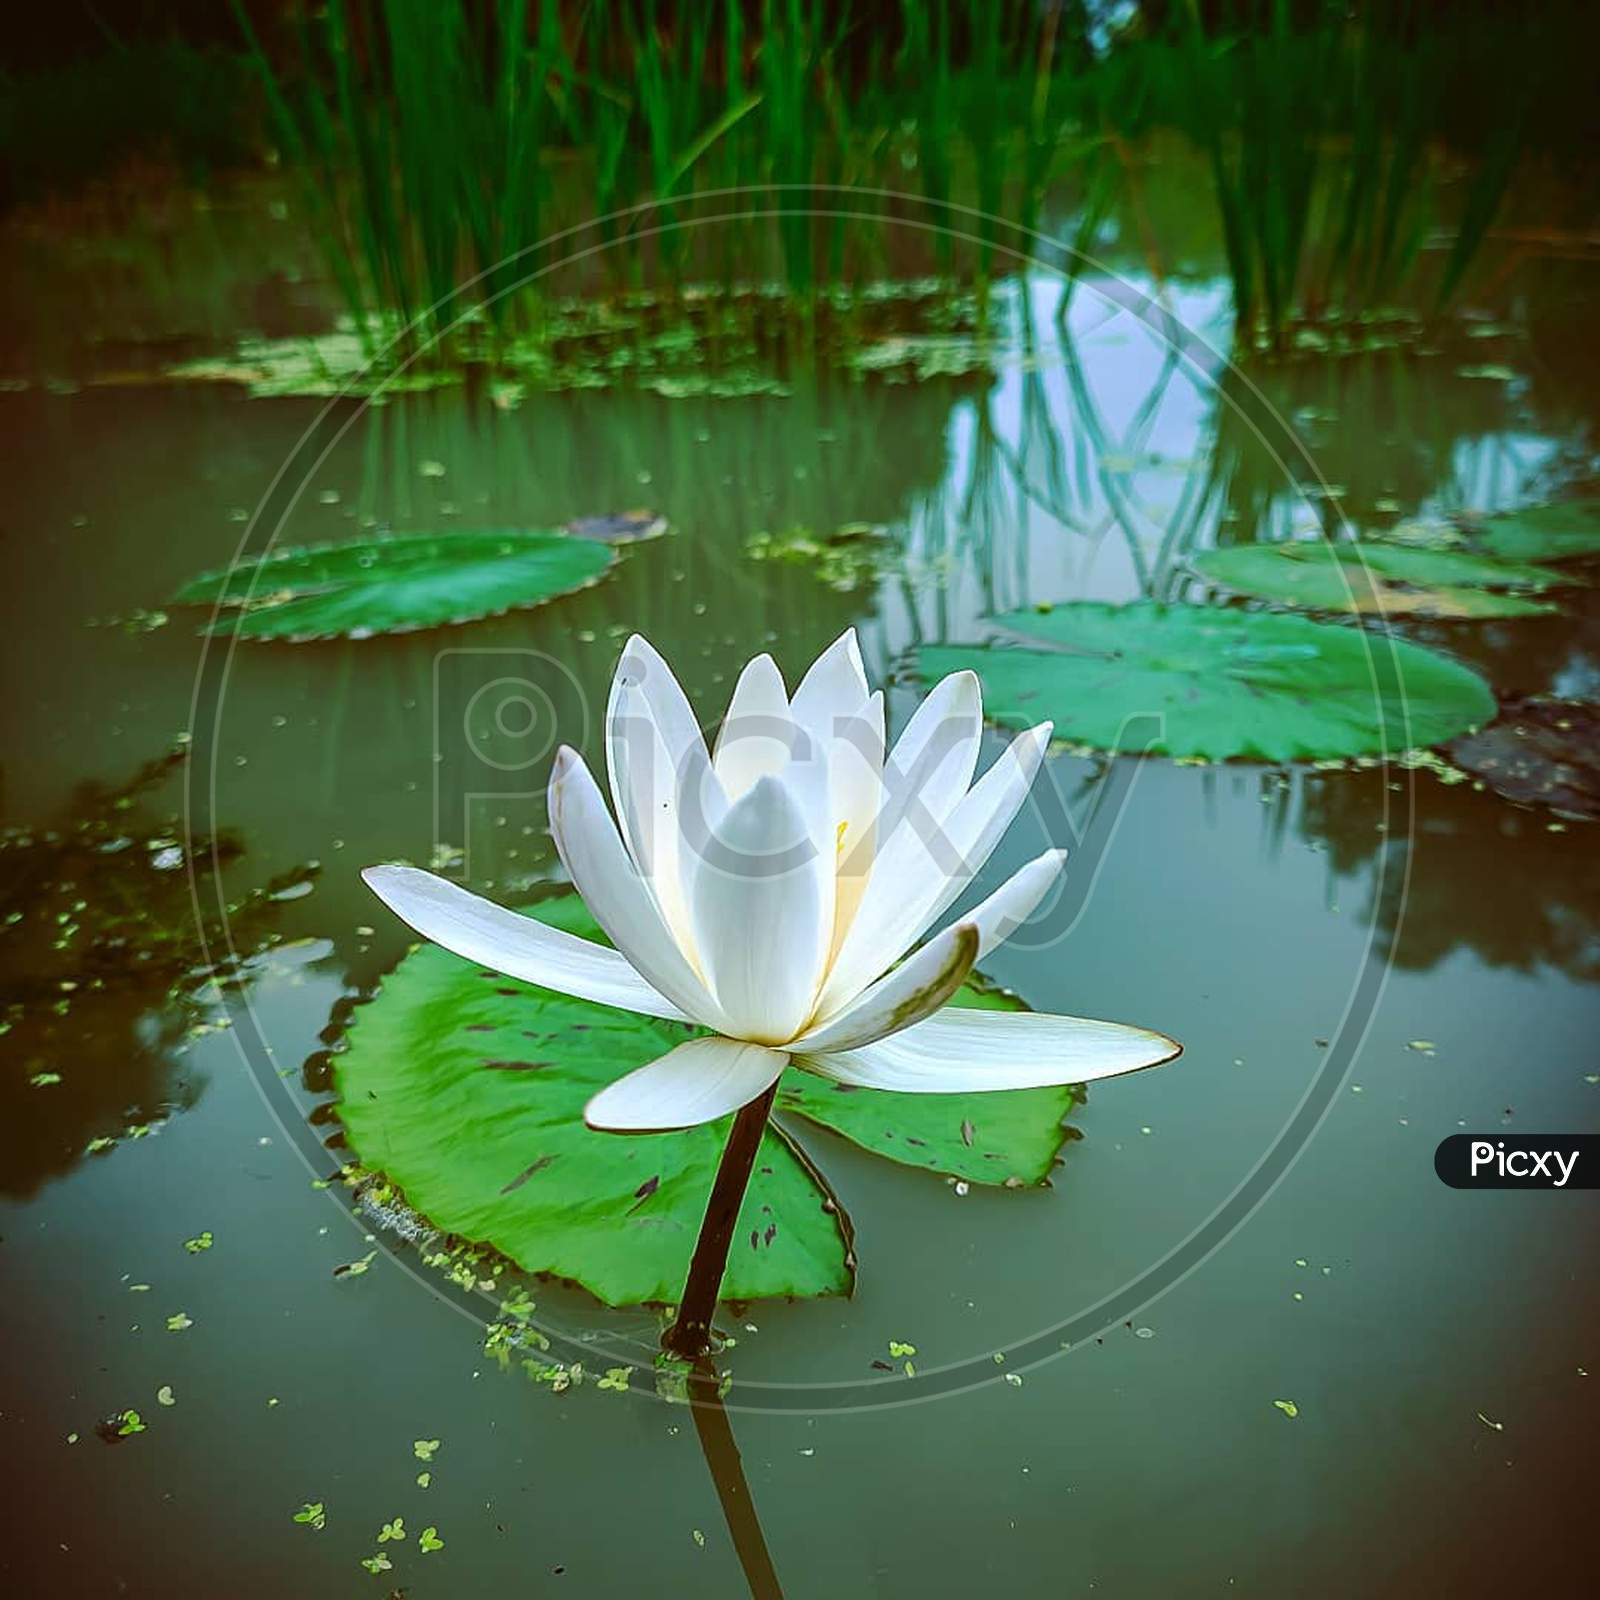 Berra lily, flower, lotus family, white